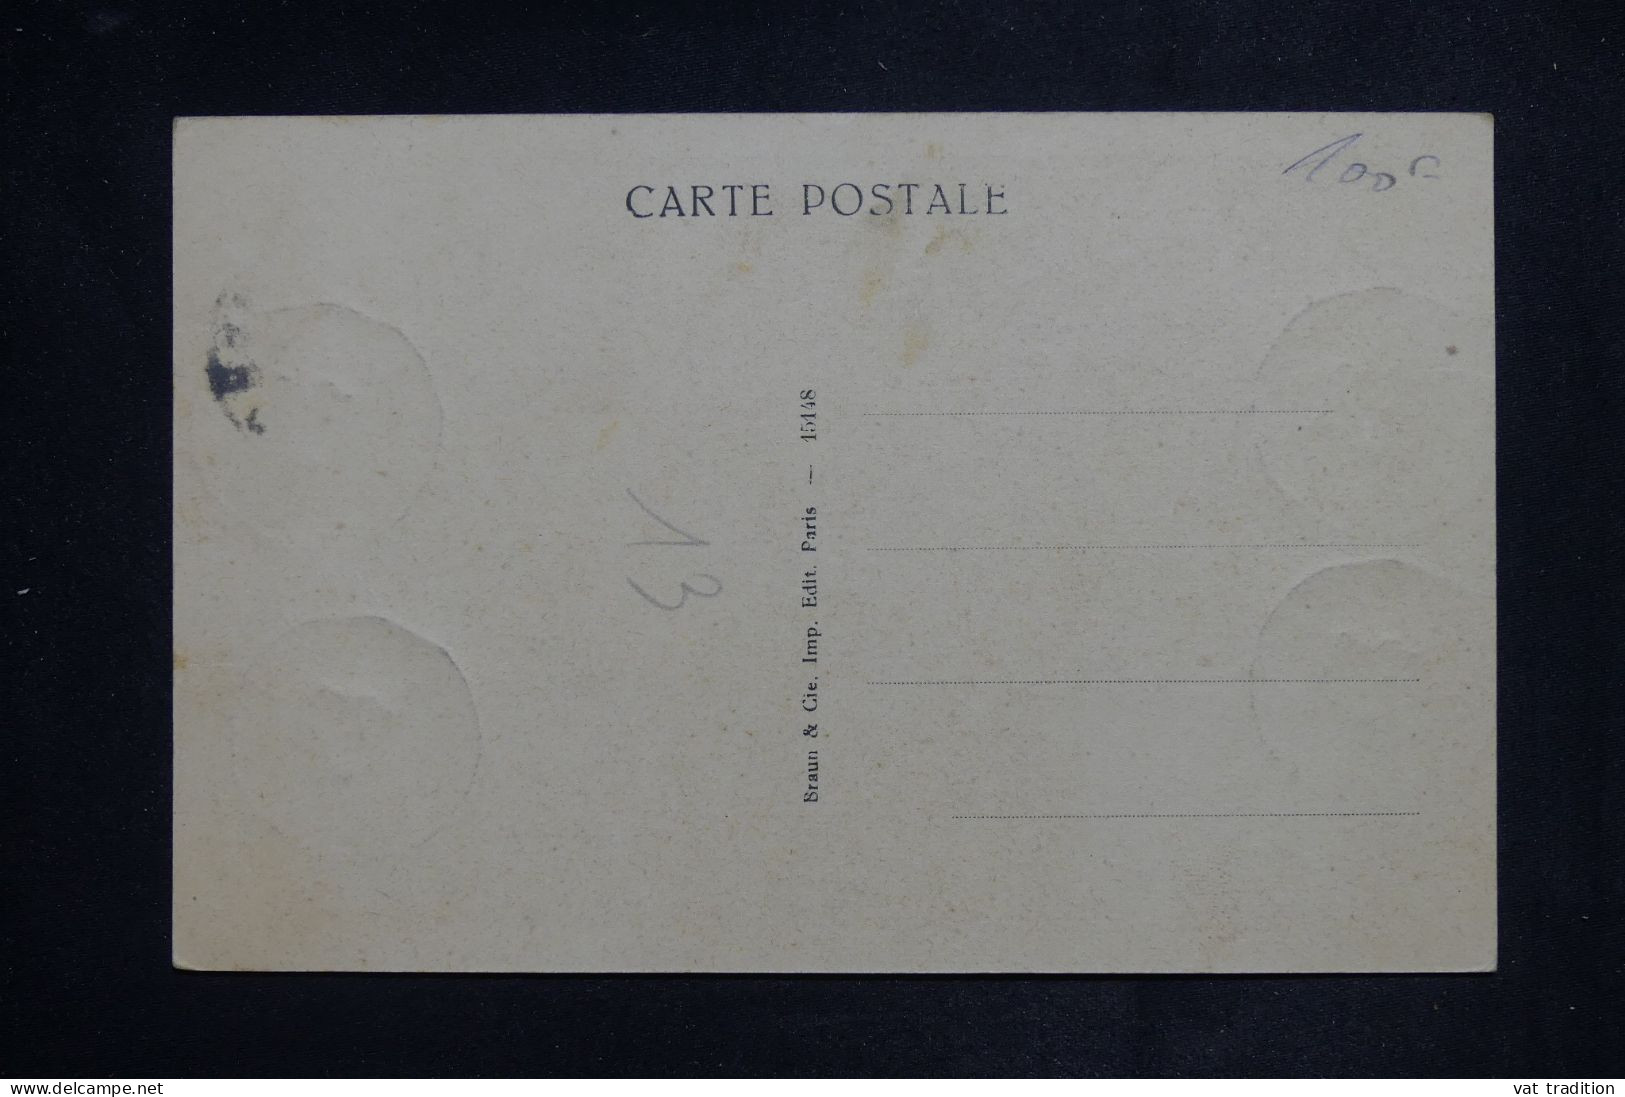 ALGÉRIE - Carte Maximum En 1948 - Oeuvre De Millet  - L 150903 - Maximum Cards